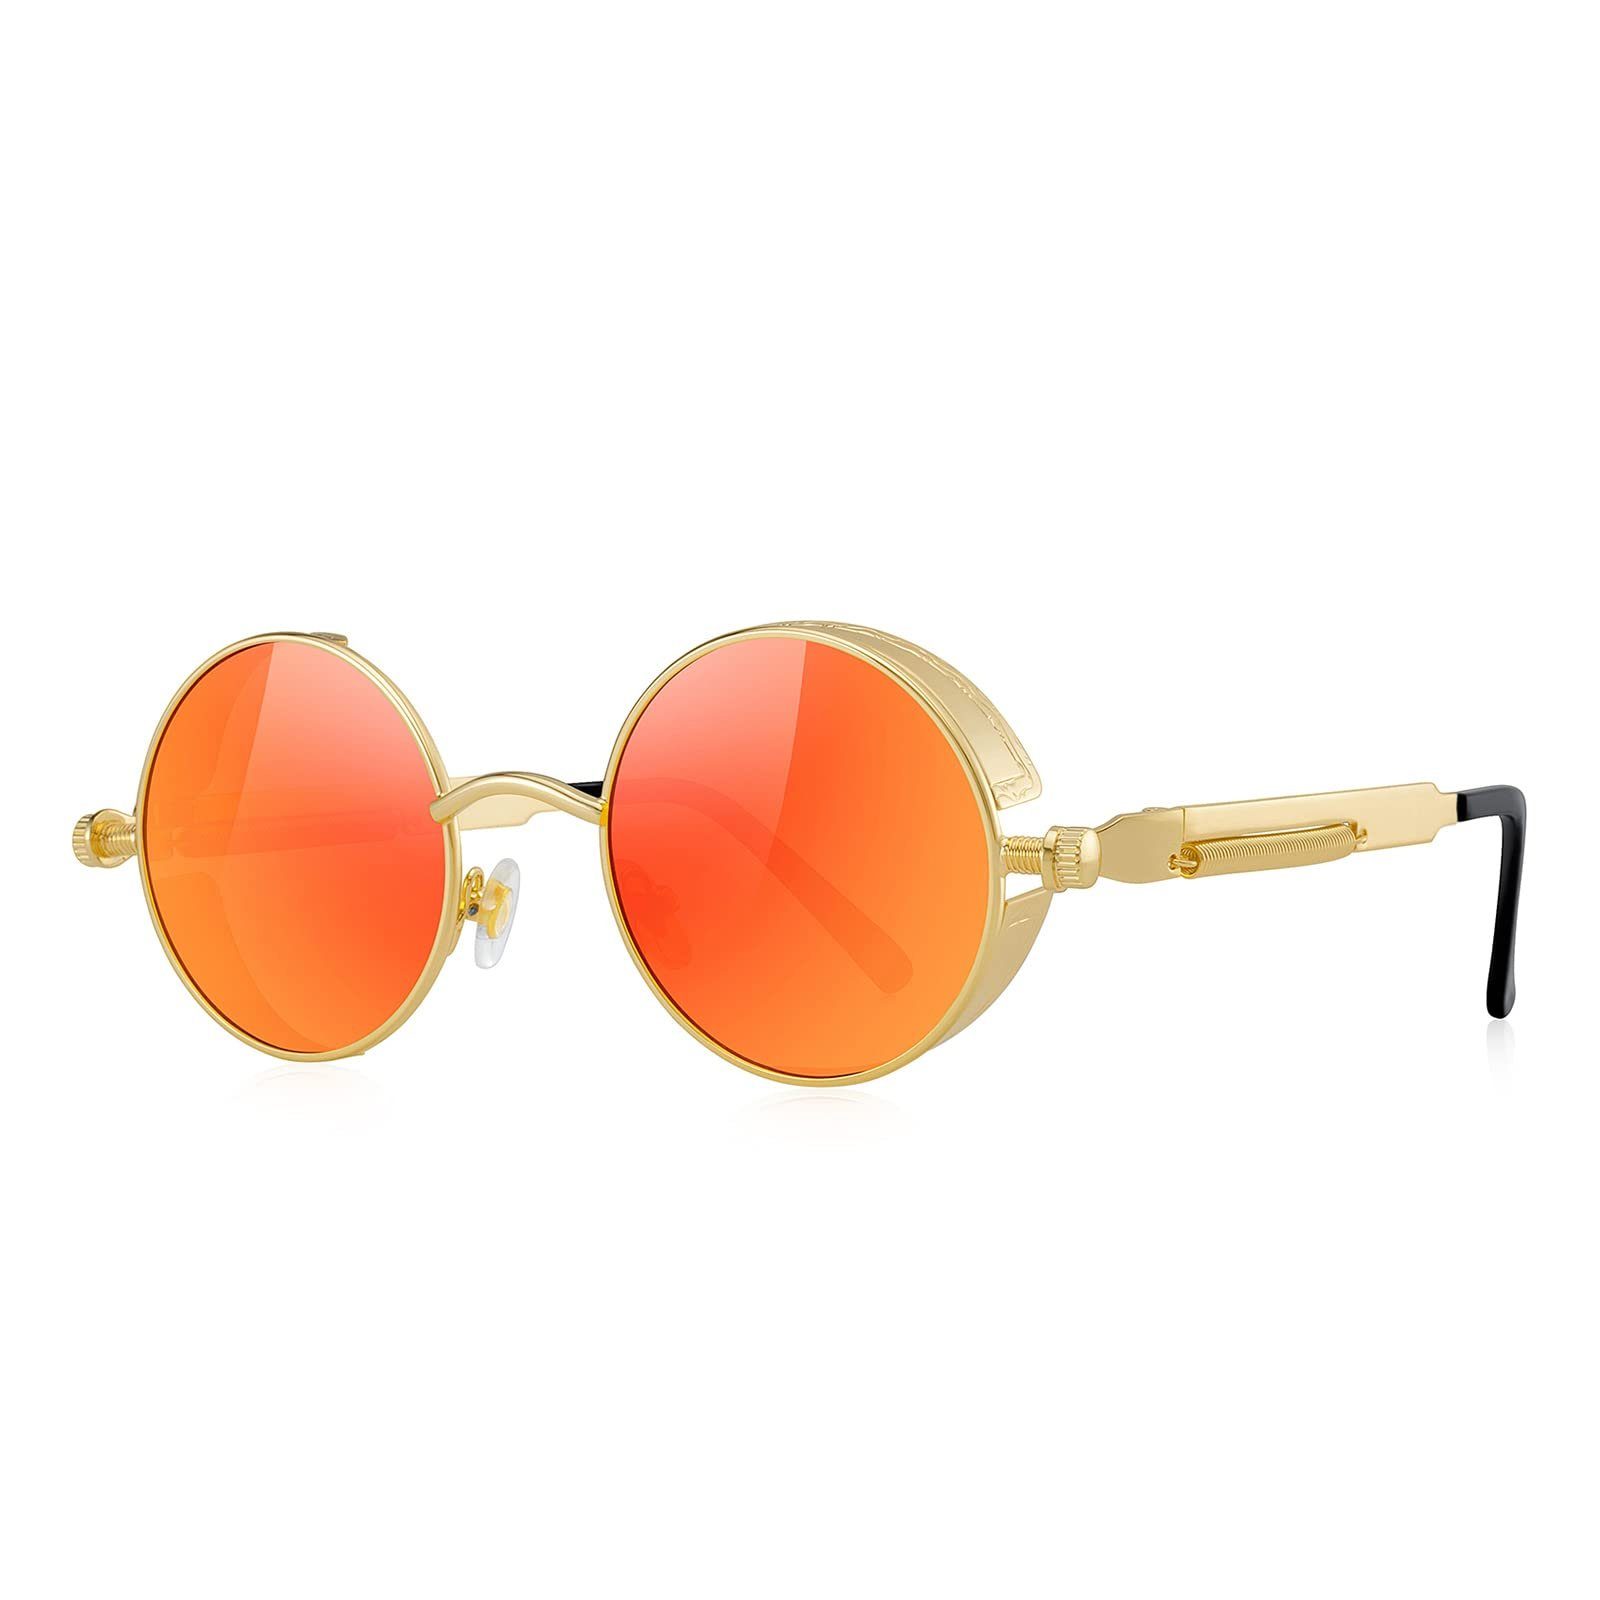 Housruse Sonnenbrille »Herren Steampunk Brille mit runden Gläsern mit  Metallrahmen« online kaufen | OTTO